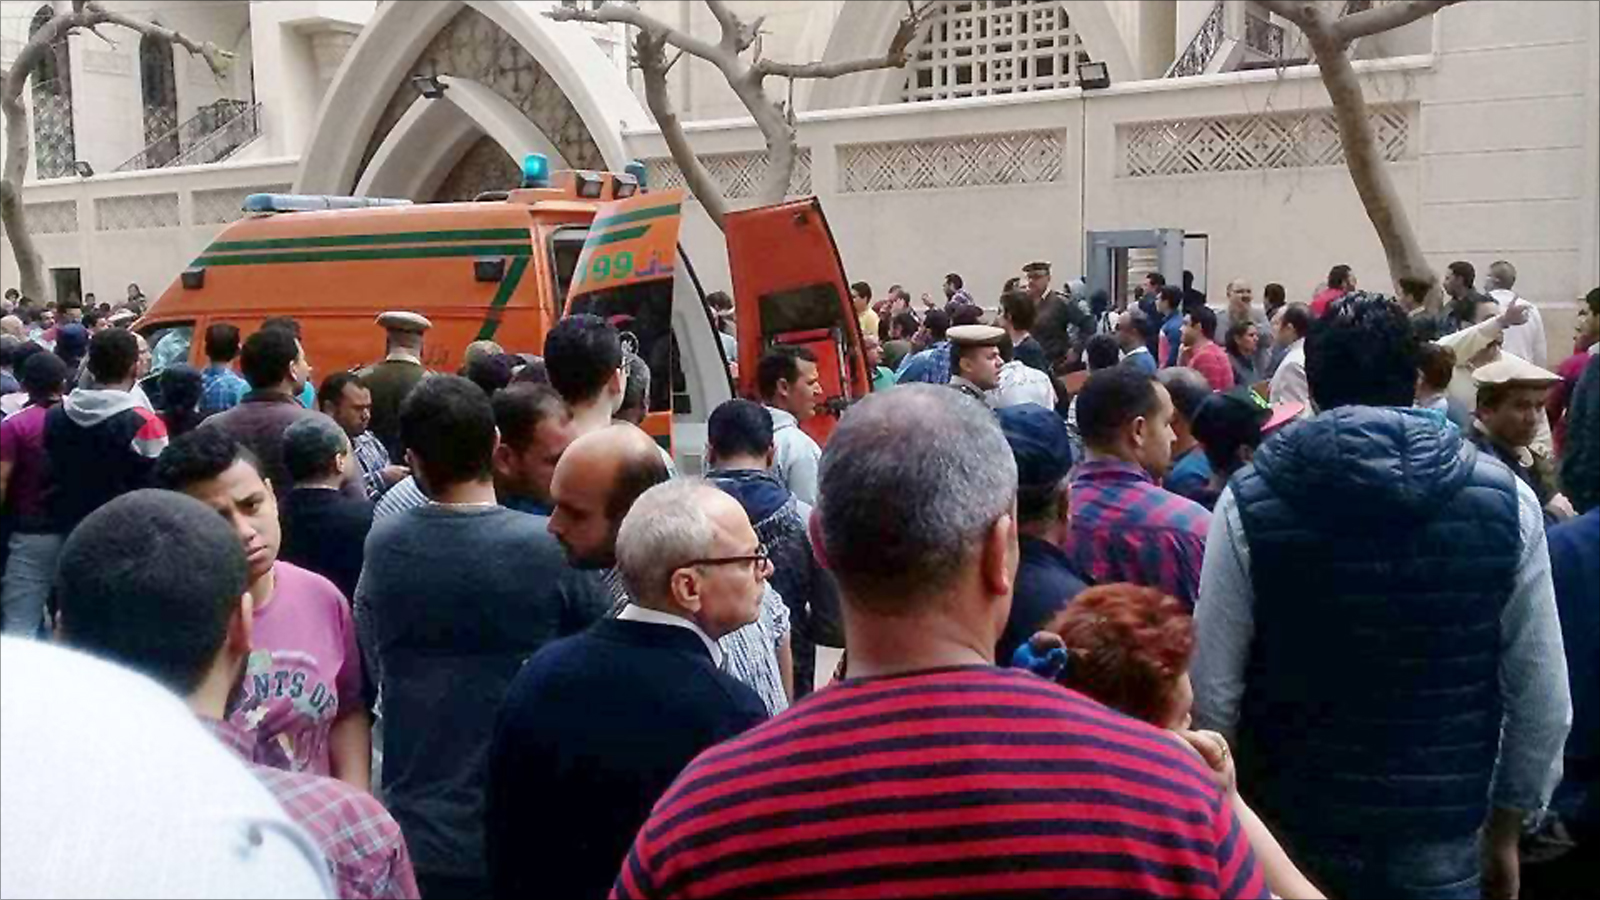 ‪تفجير كنيسة بطنطا أثار غضب الأقباط ضد السلطة بسبب ما اعتبروه تراخيا وتقاعسا أمنيا‬ (الجزيرة)